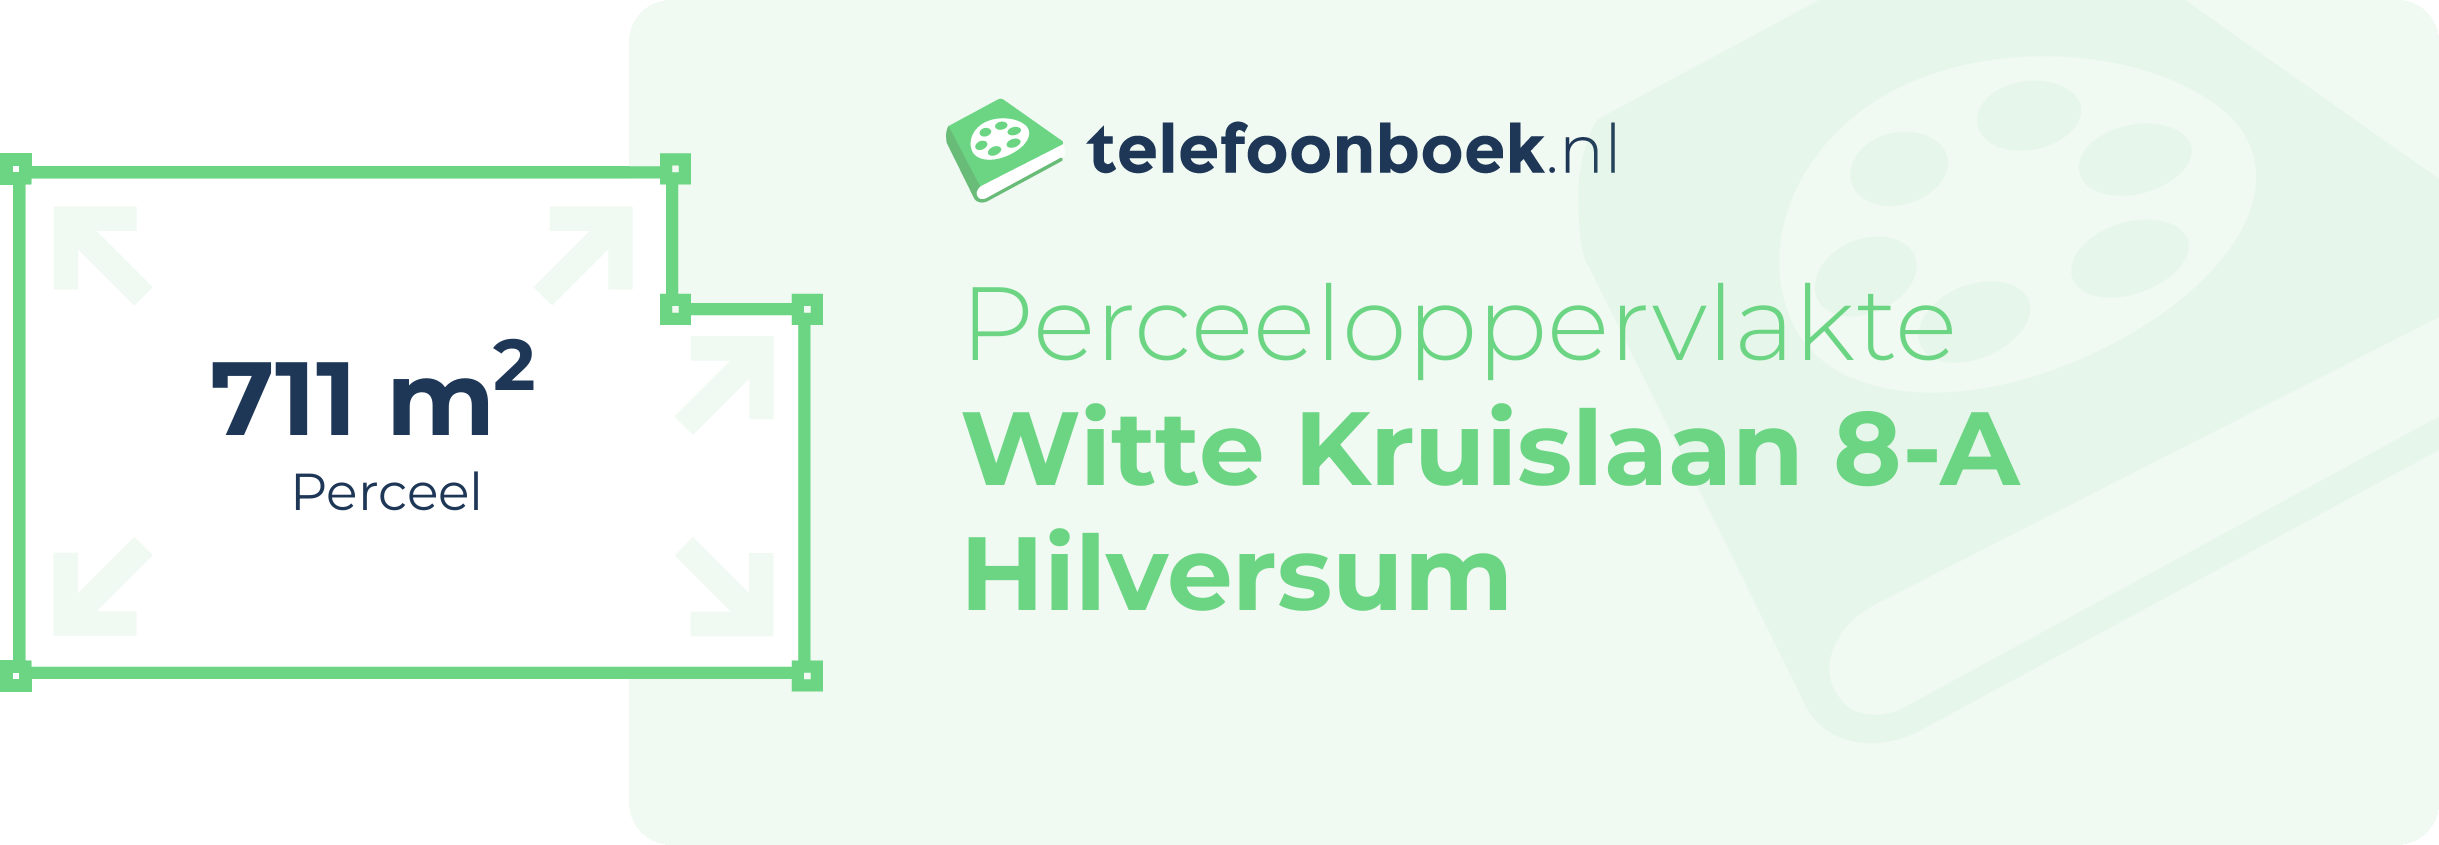 Perceeloppervlakte Witte Kruislaan 8-A Hilversum